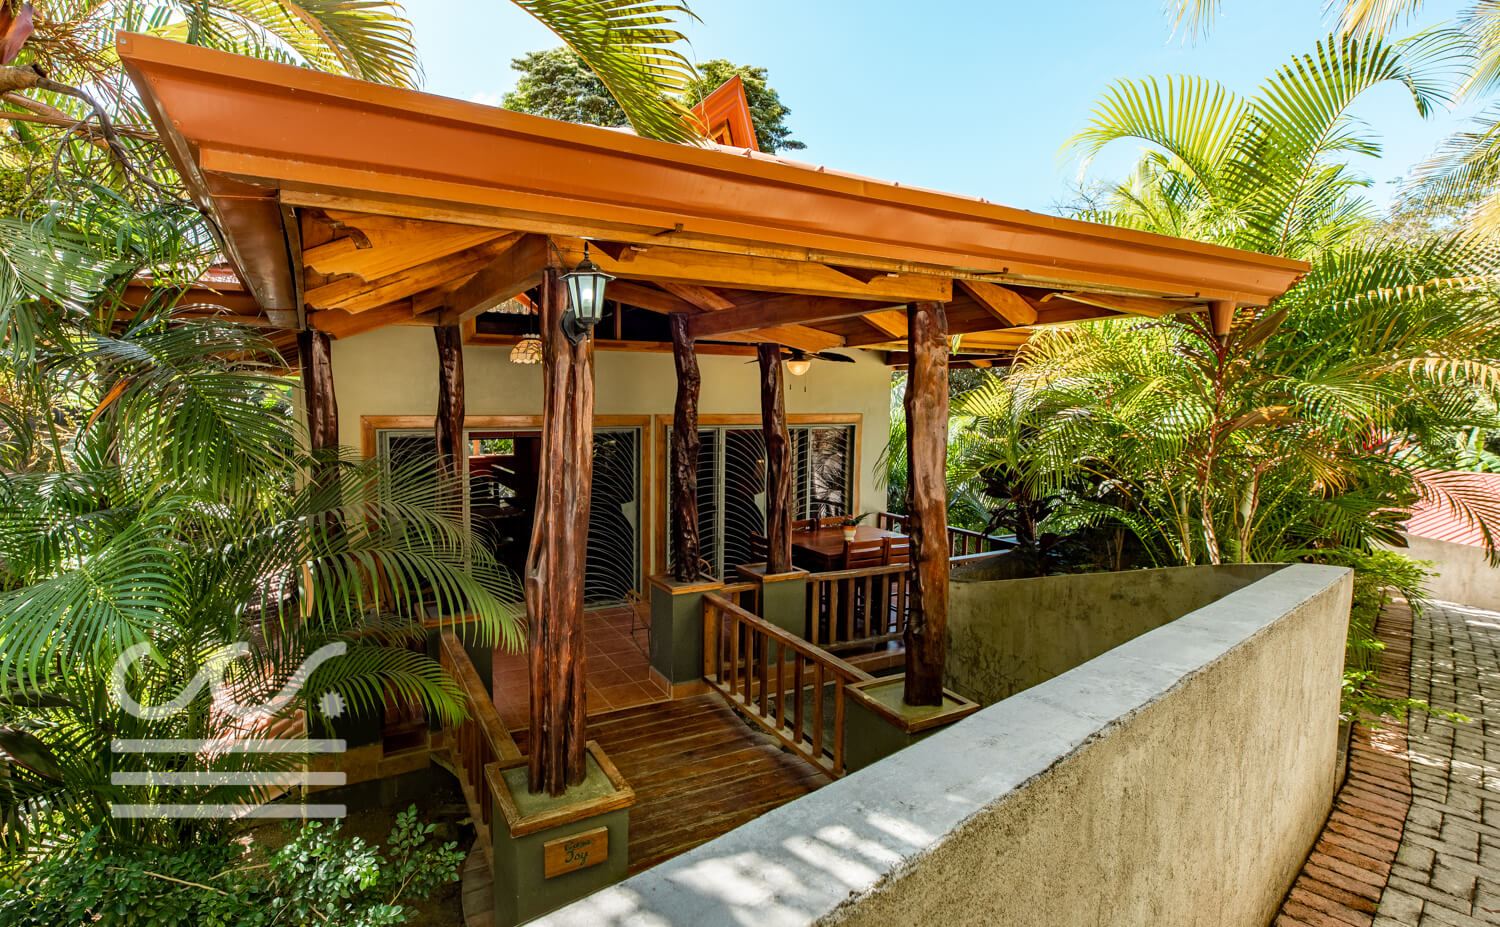 Casa-Joy-Wanderlust-Realty-Real-Estate-Rentals-Nosara-Costa-Rica-7.jpg